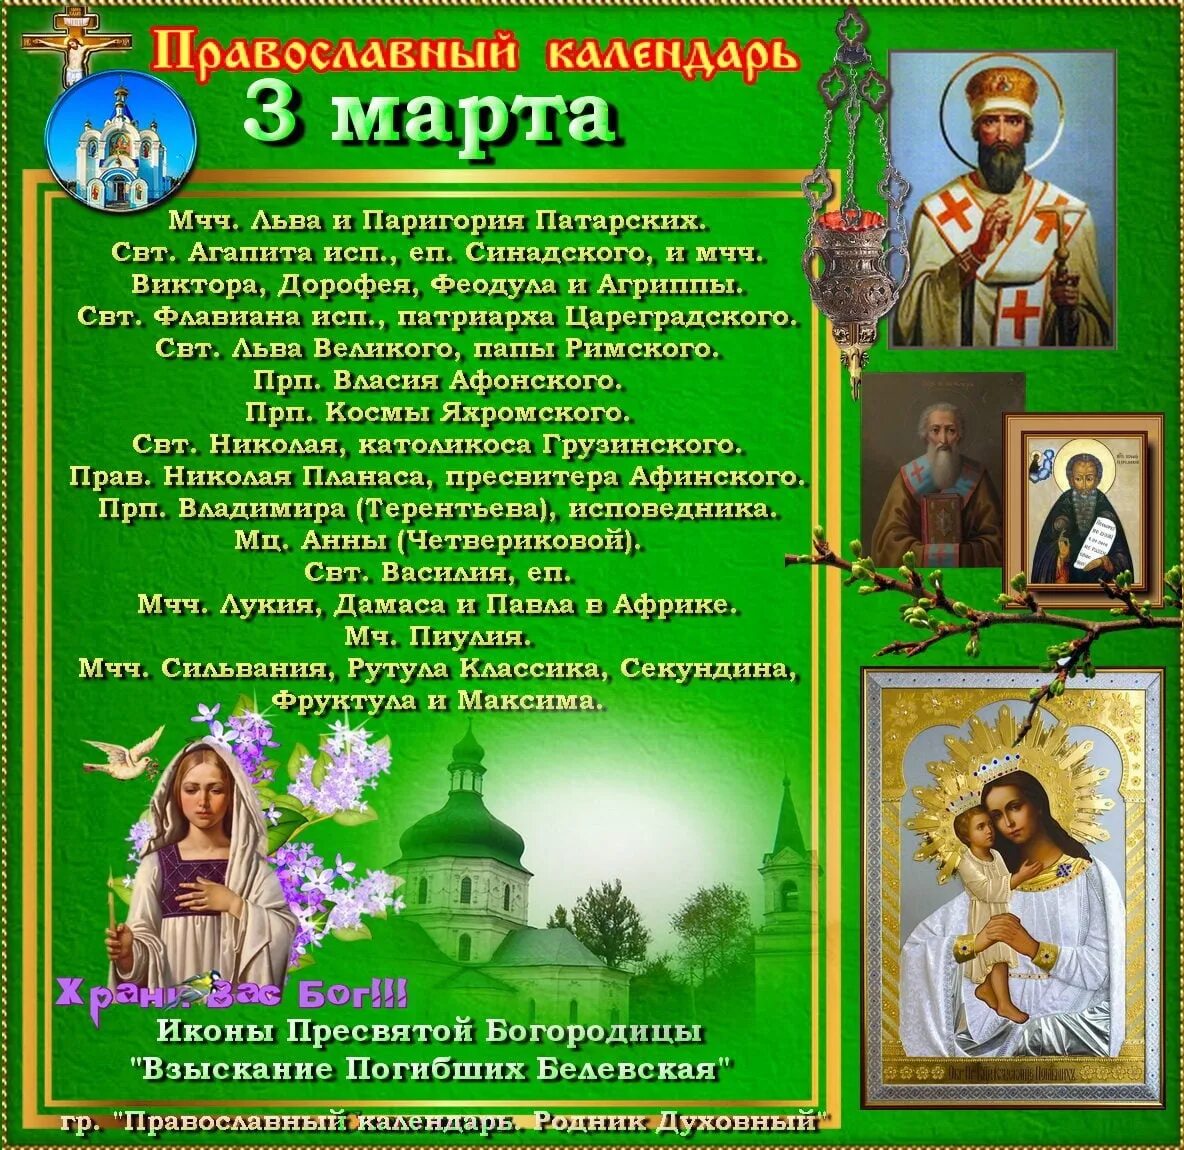 9 апреля какой праздник православный. Православный календарь на март.